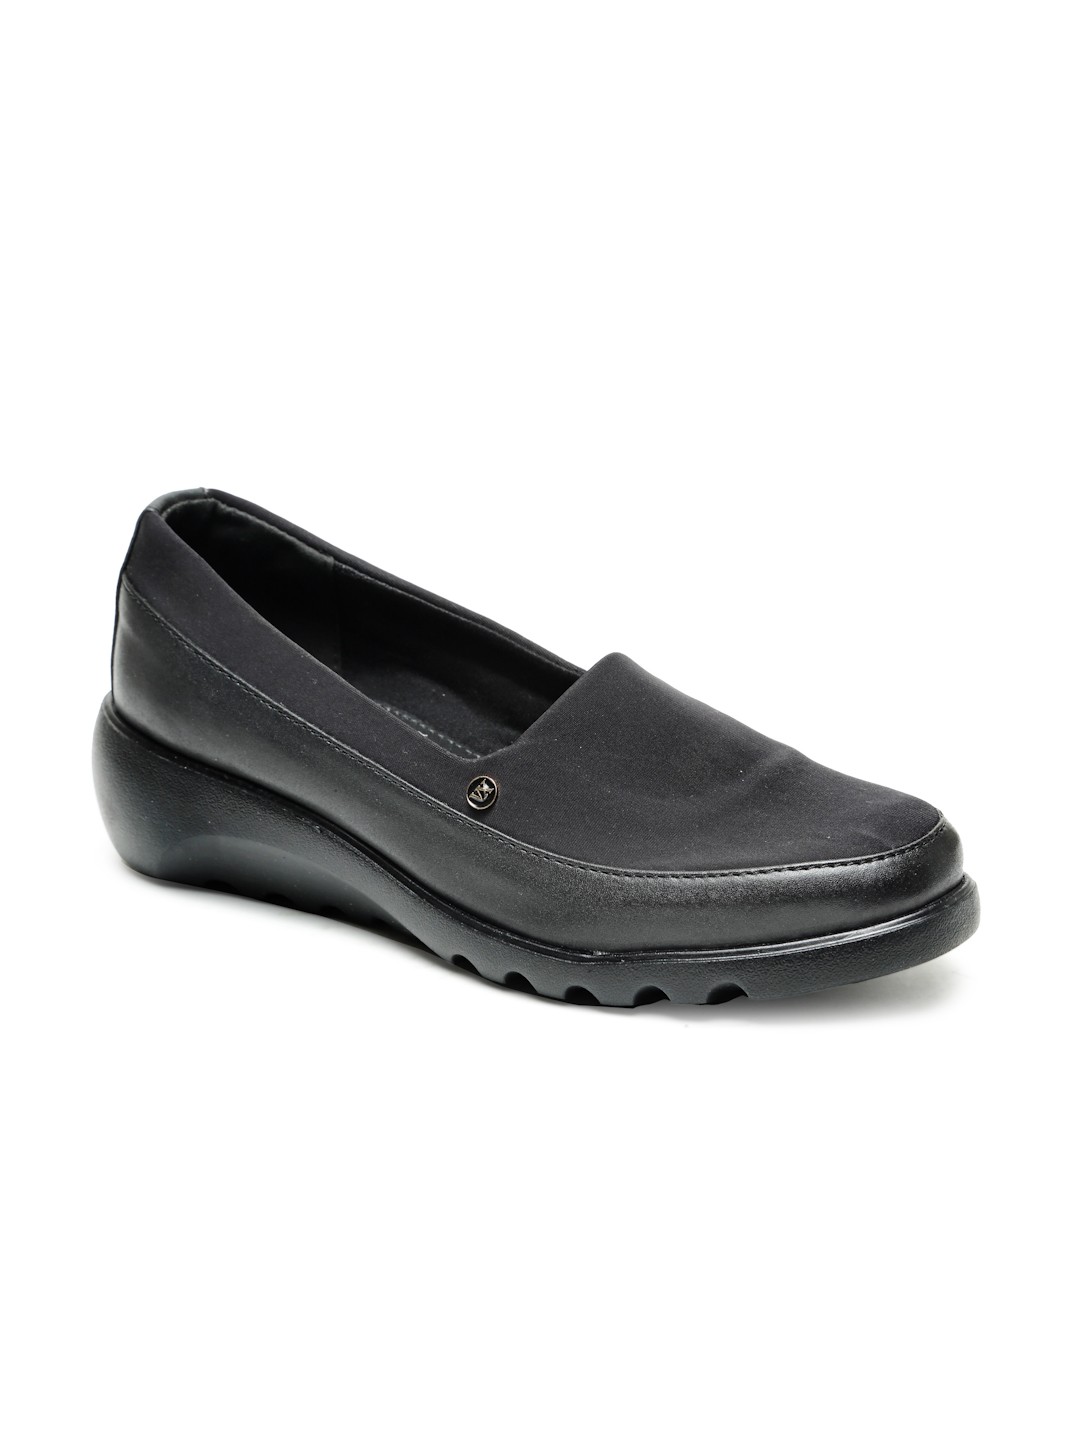 Buy Von Wellx Germany Comfort Women's Black Casual Shoes Elsa Online in Varanasi